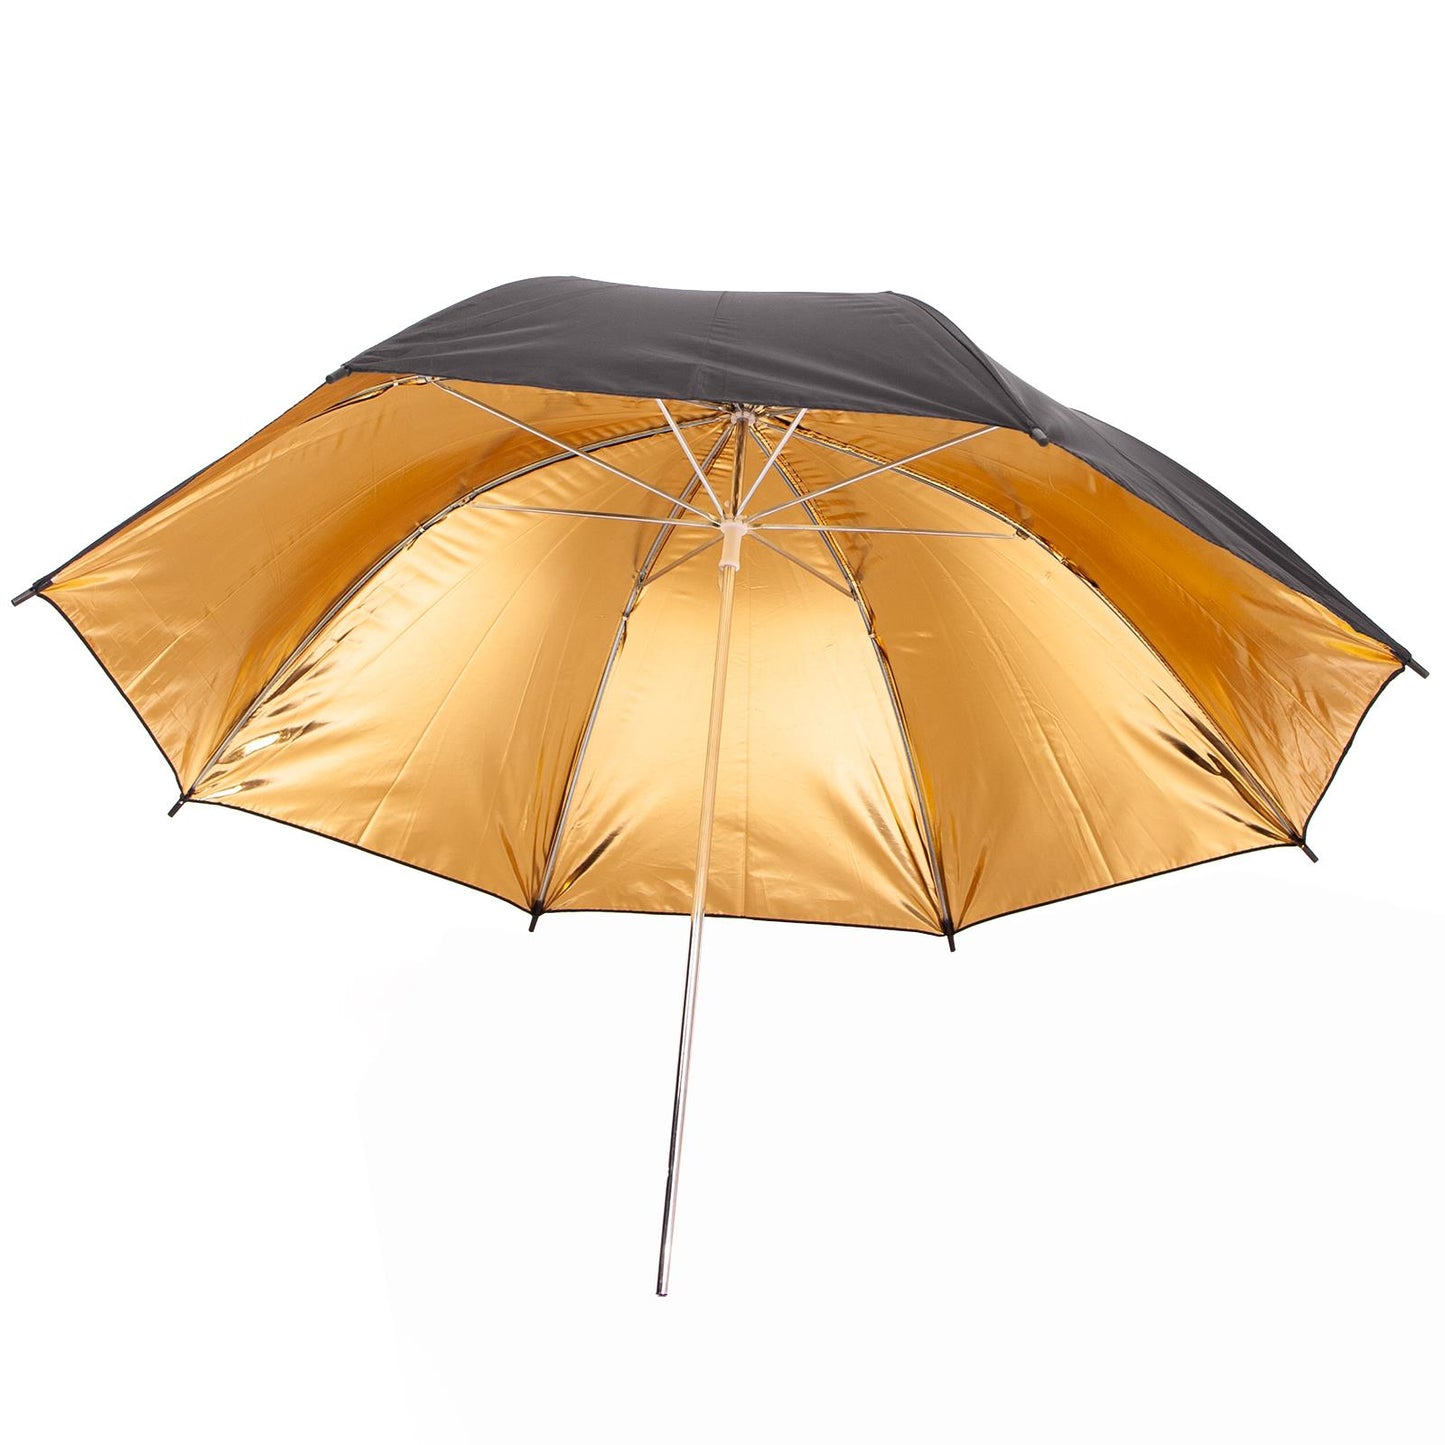 43" Black Gold Umbrella